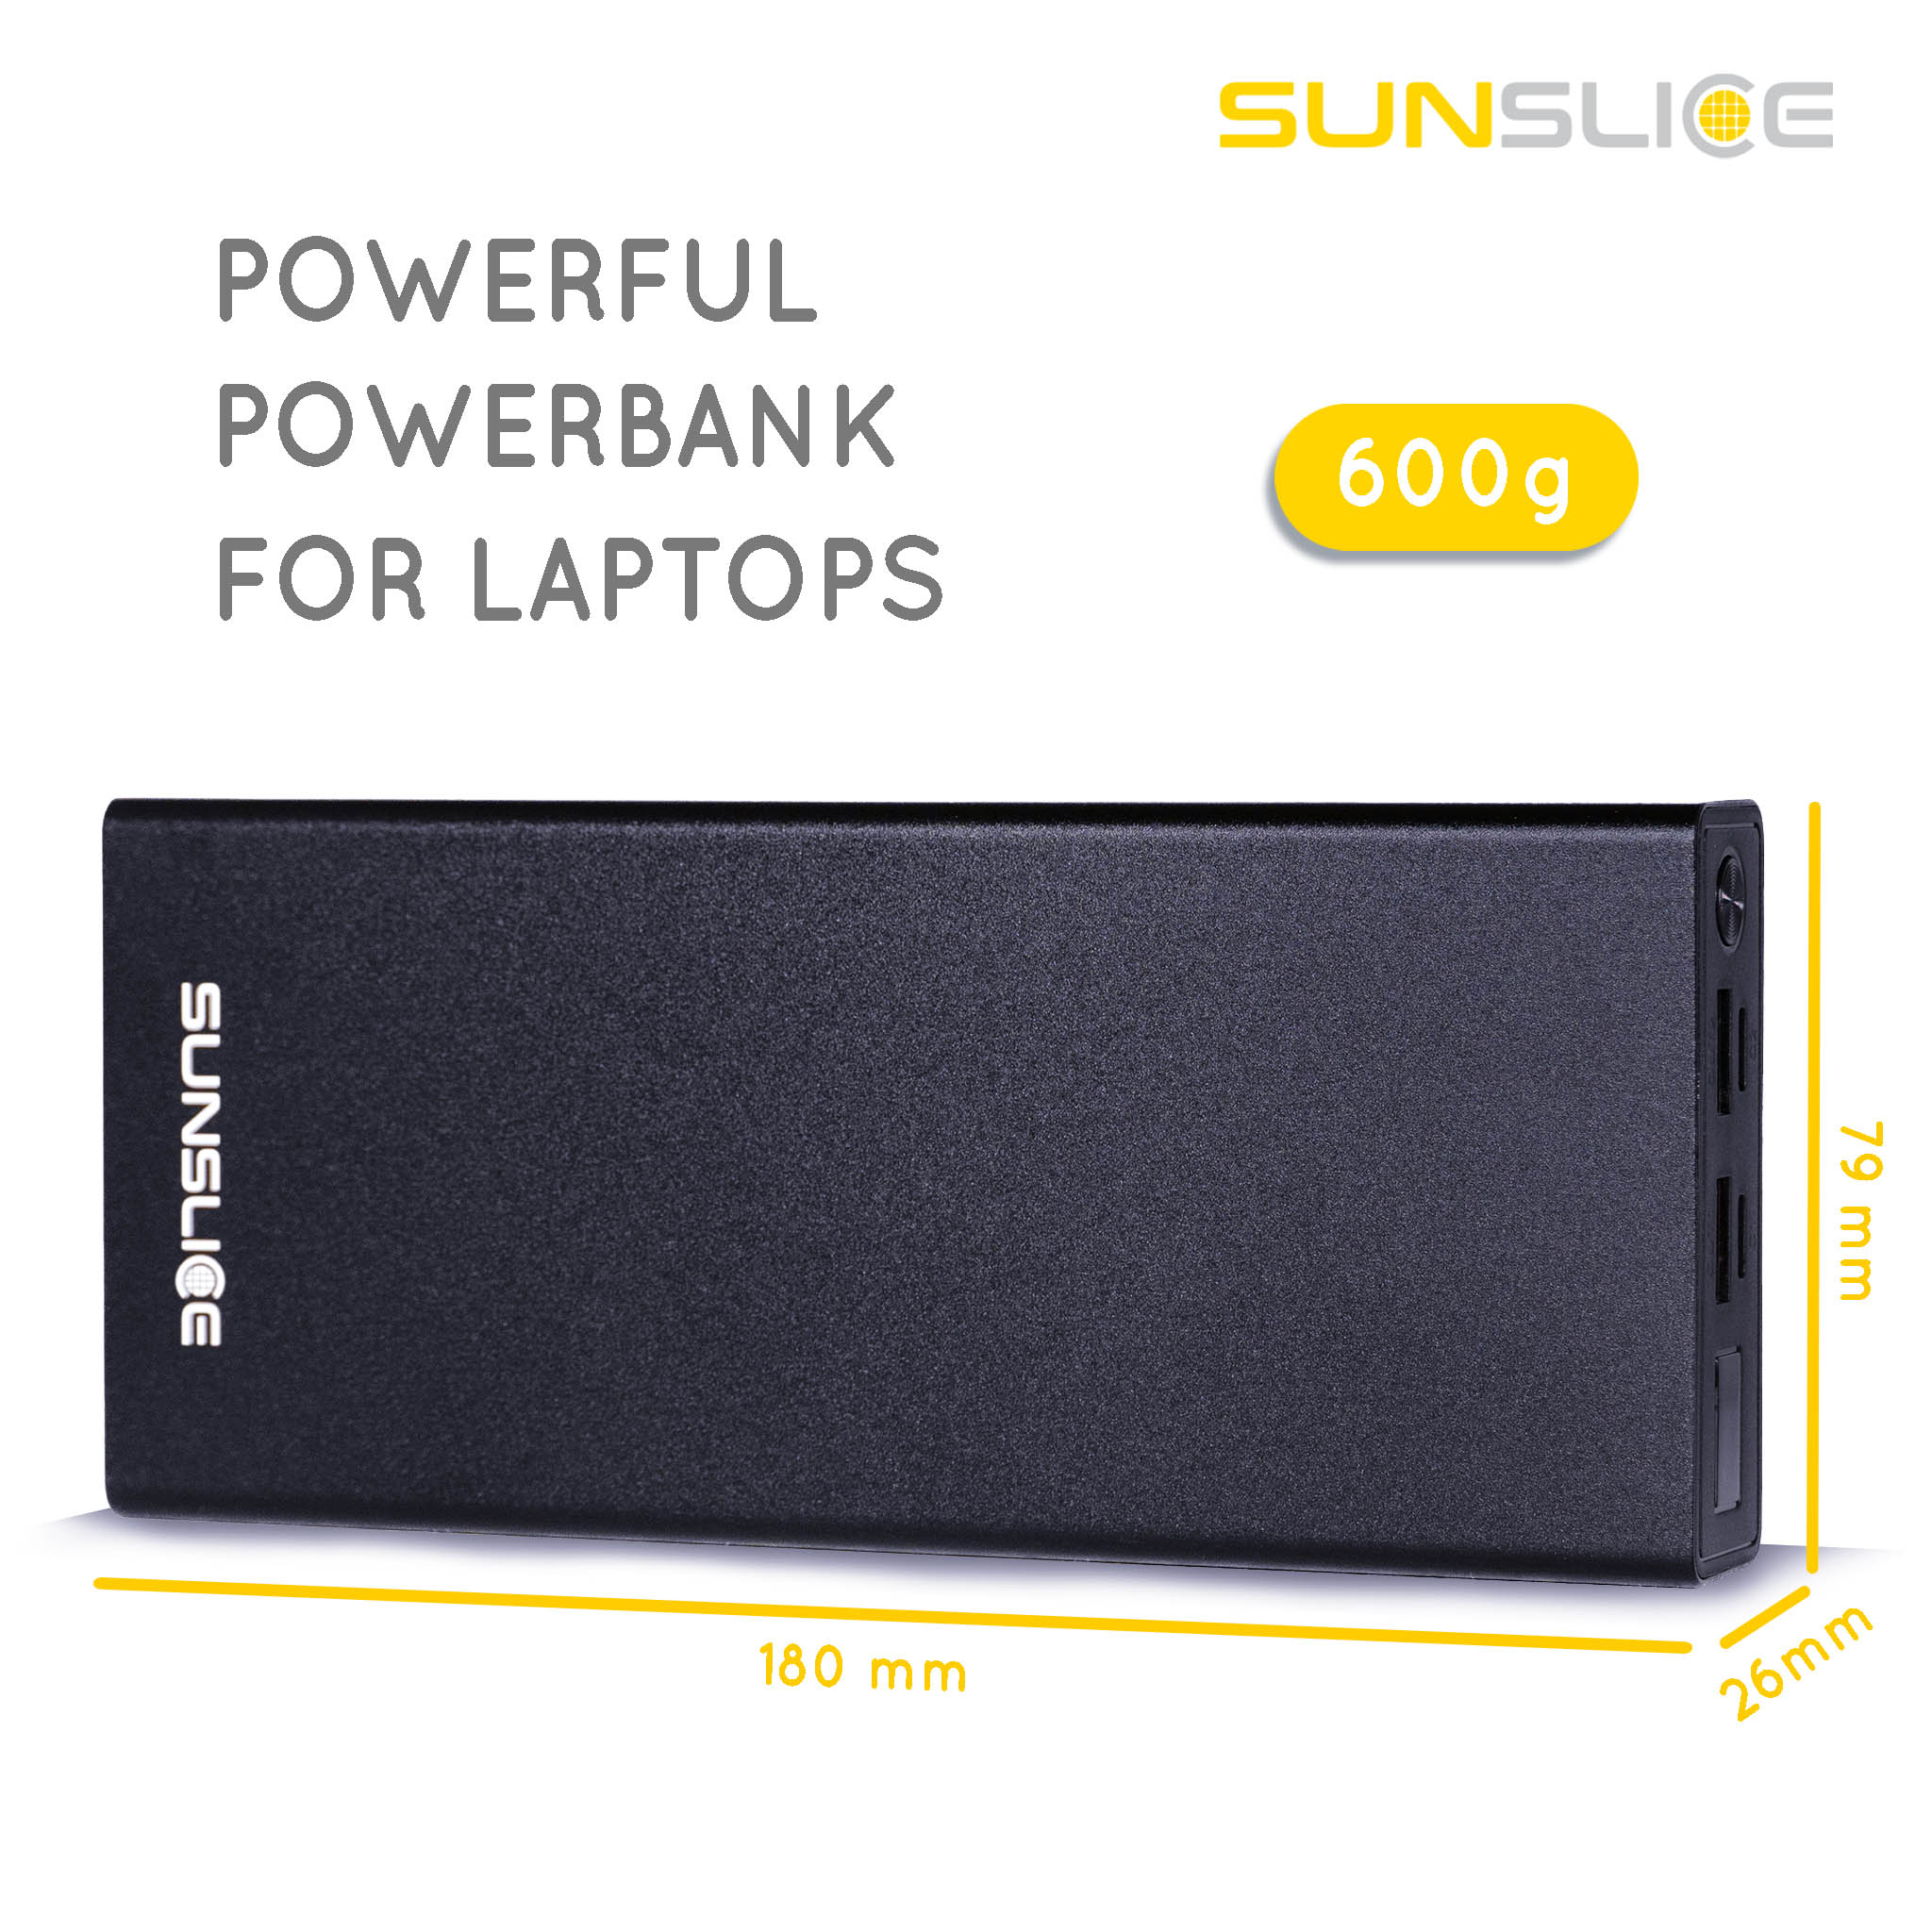 Powerbank Gravity 27 maatinformatie: 180 mm, 79 mm, 26 mm. Gewicht: 600g Krachtige powerbank voor laptop